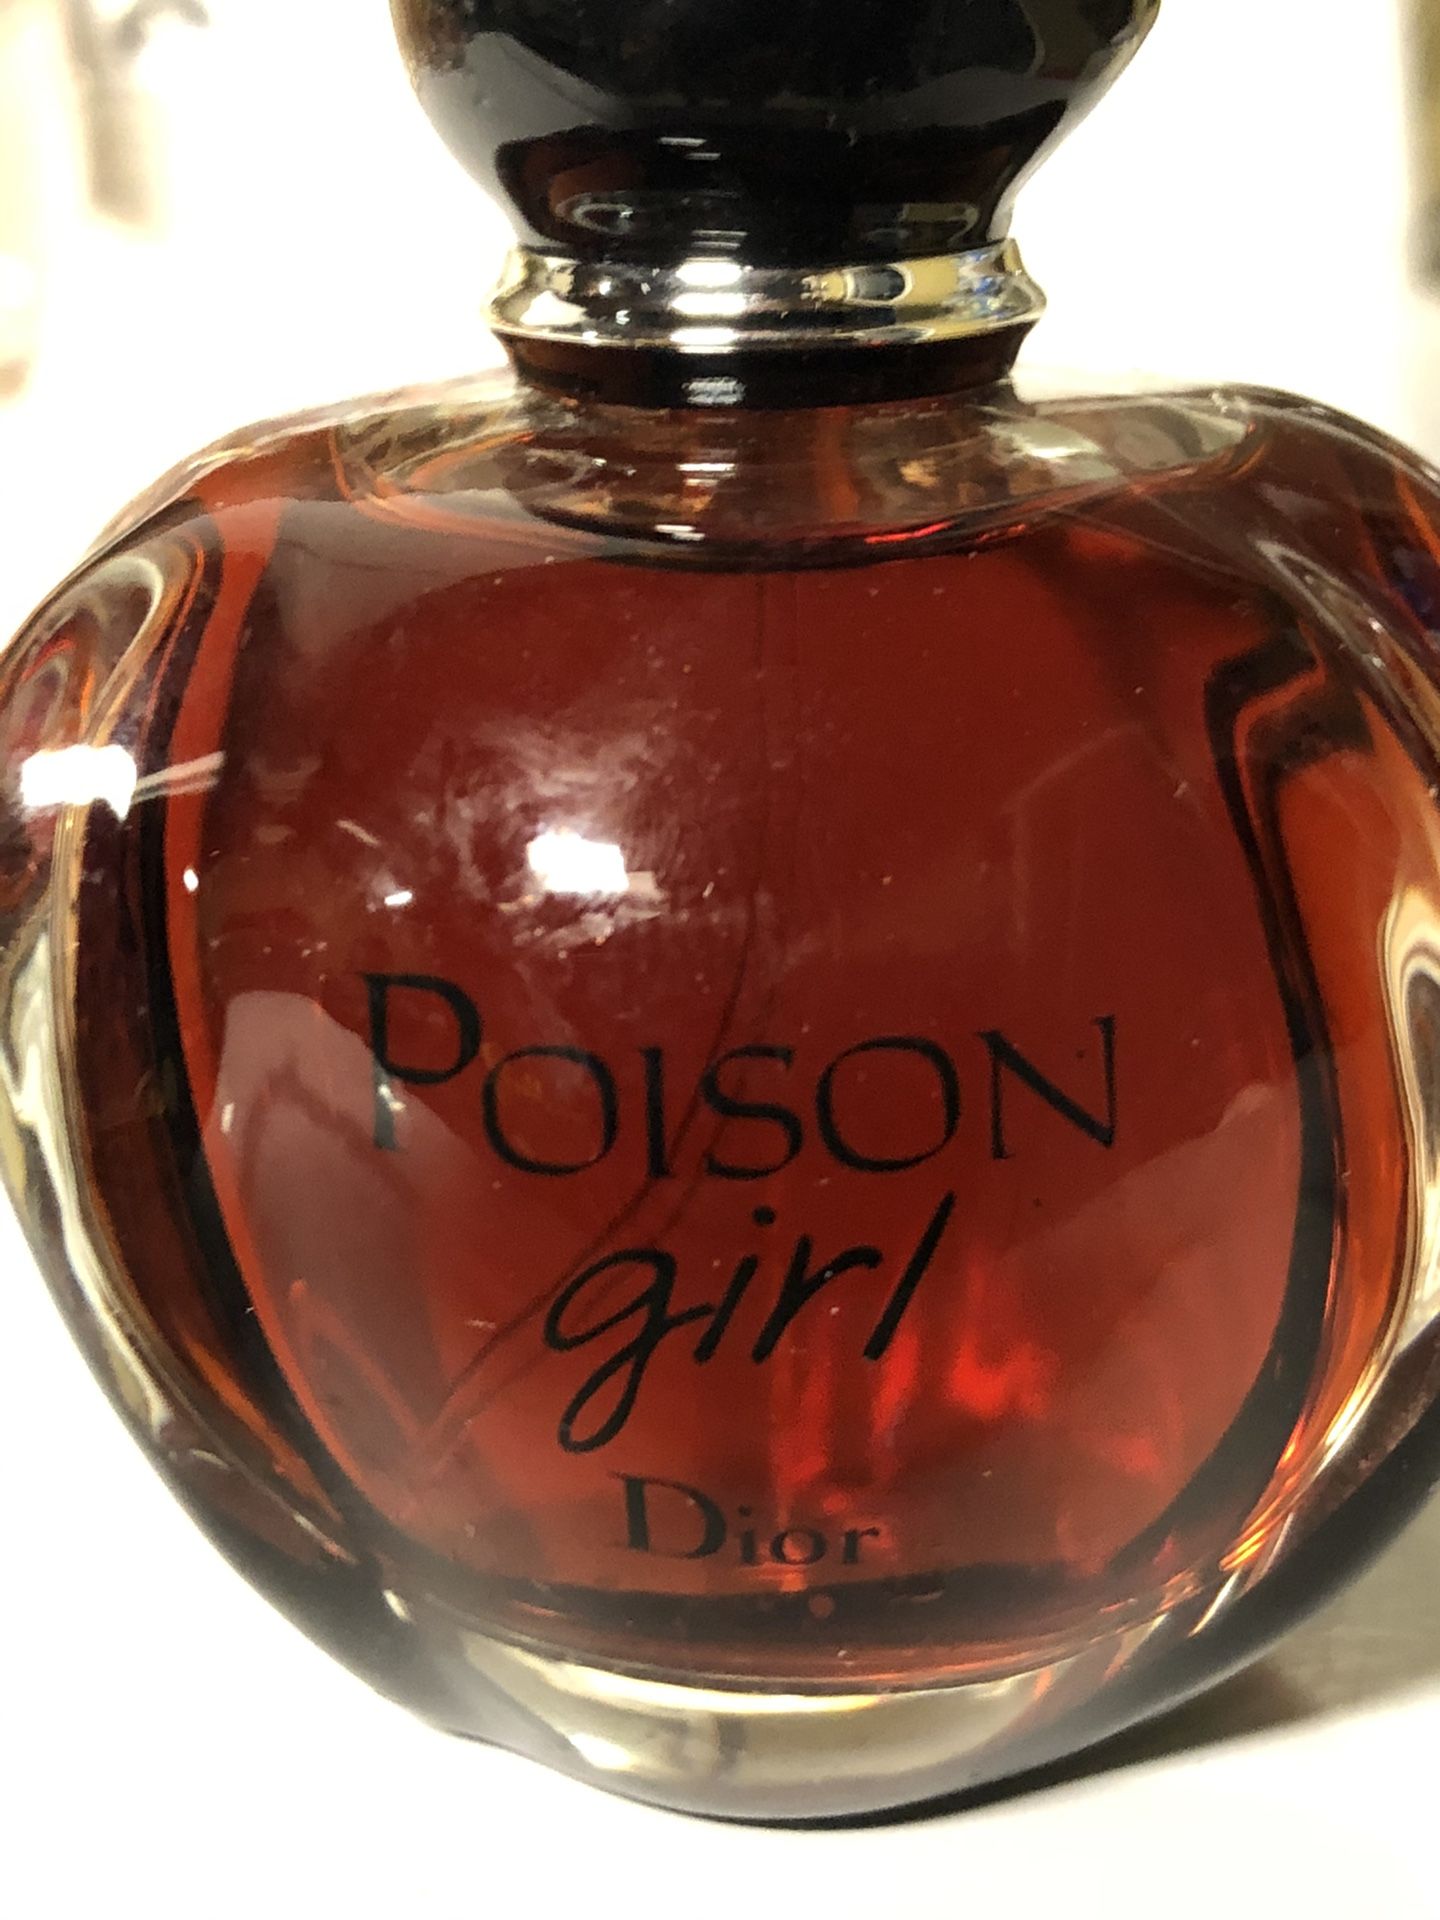 Dior Poison girl 3.4 fl Oz Woman’s Perfume